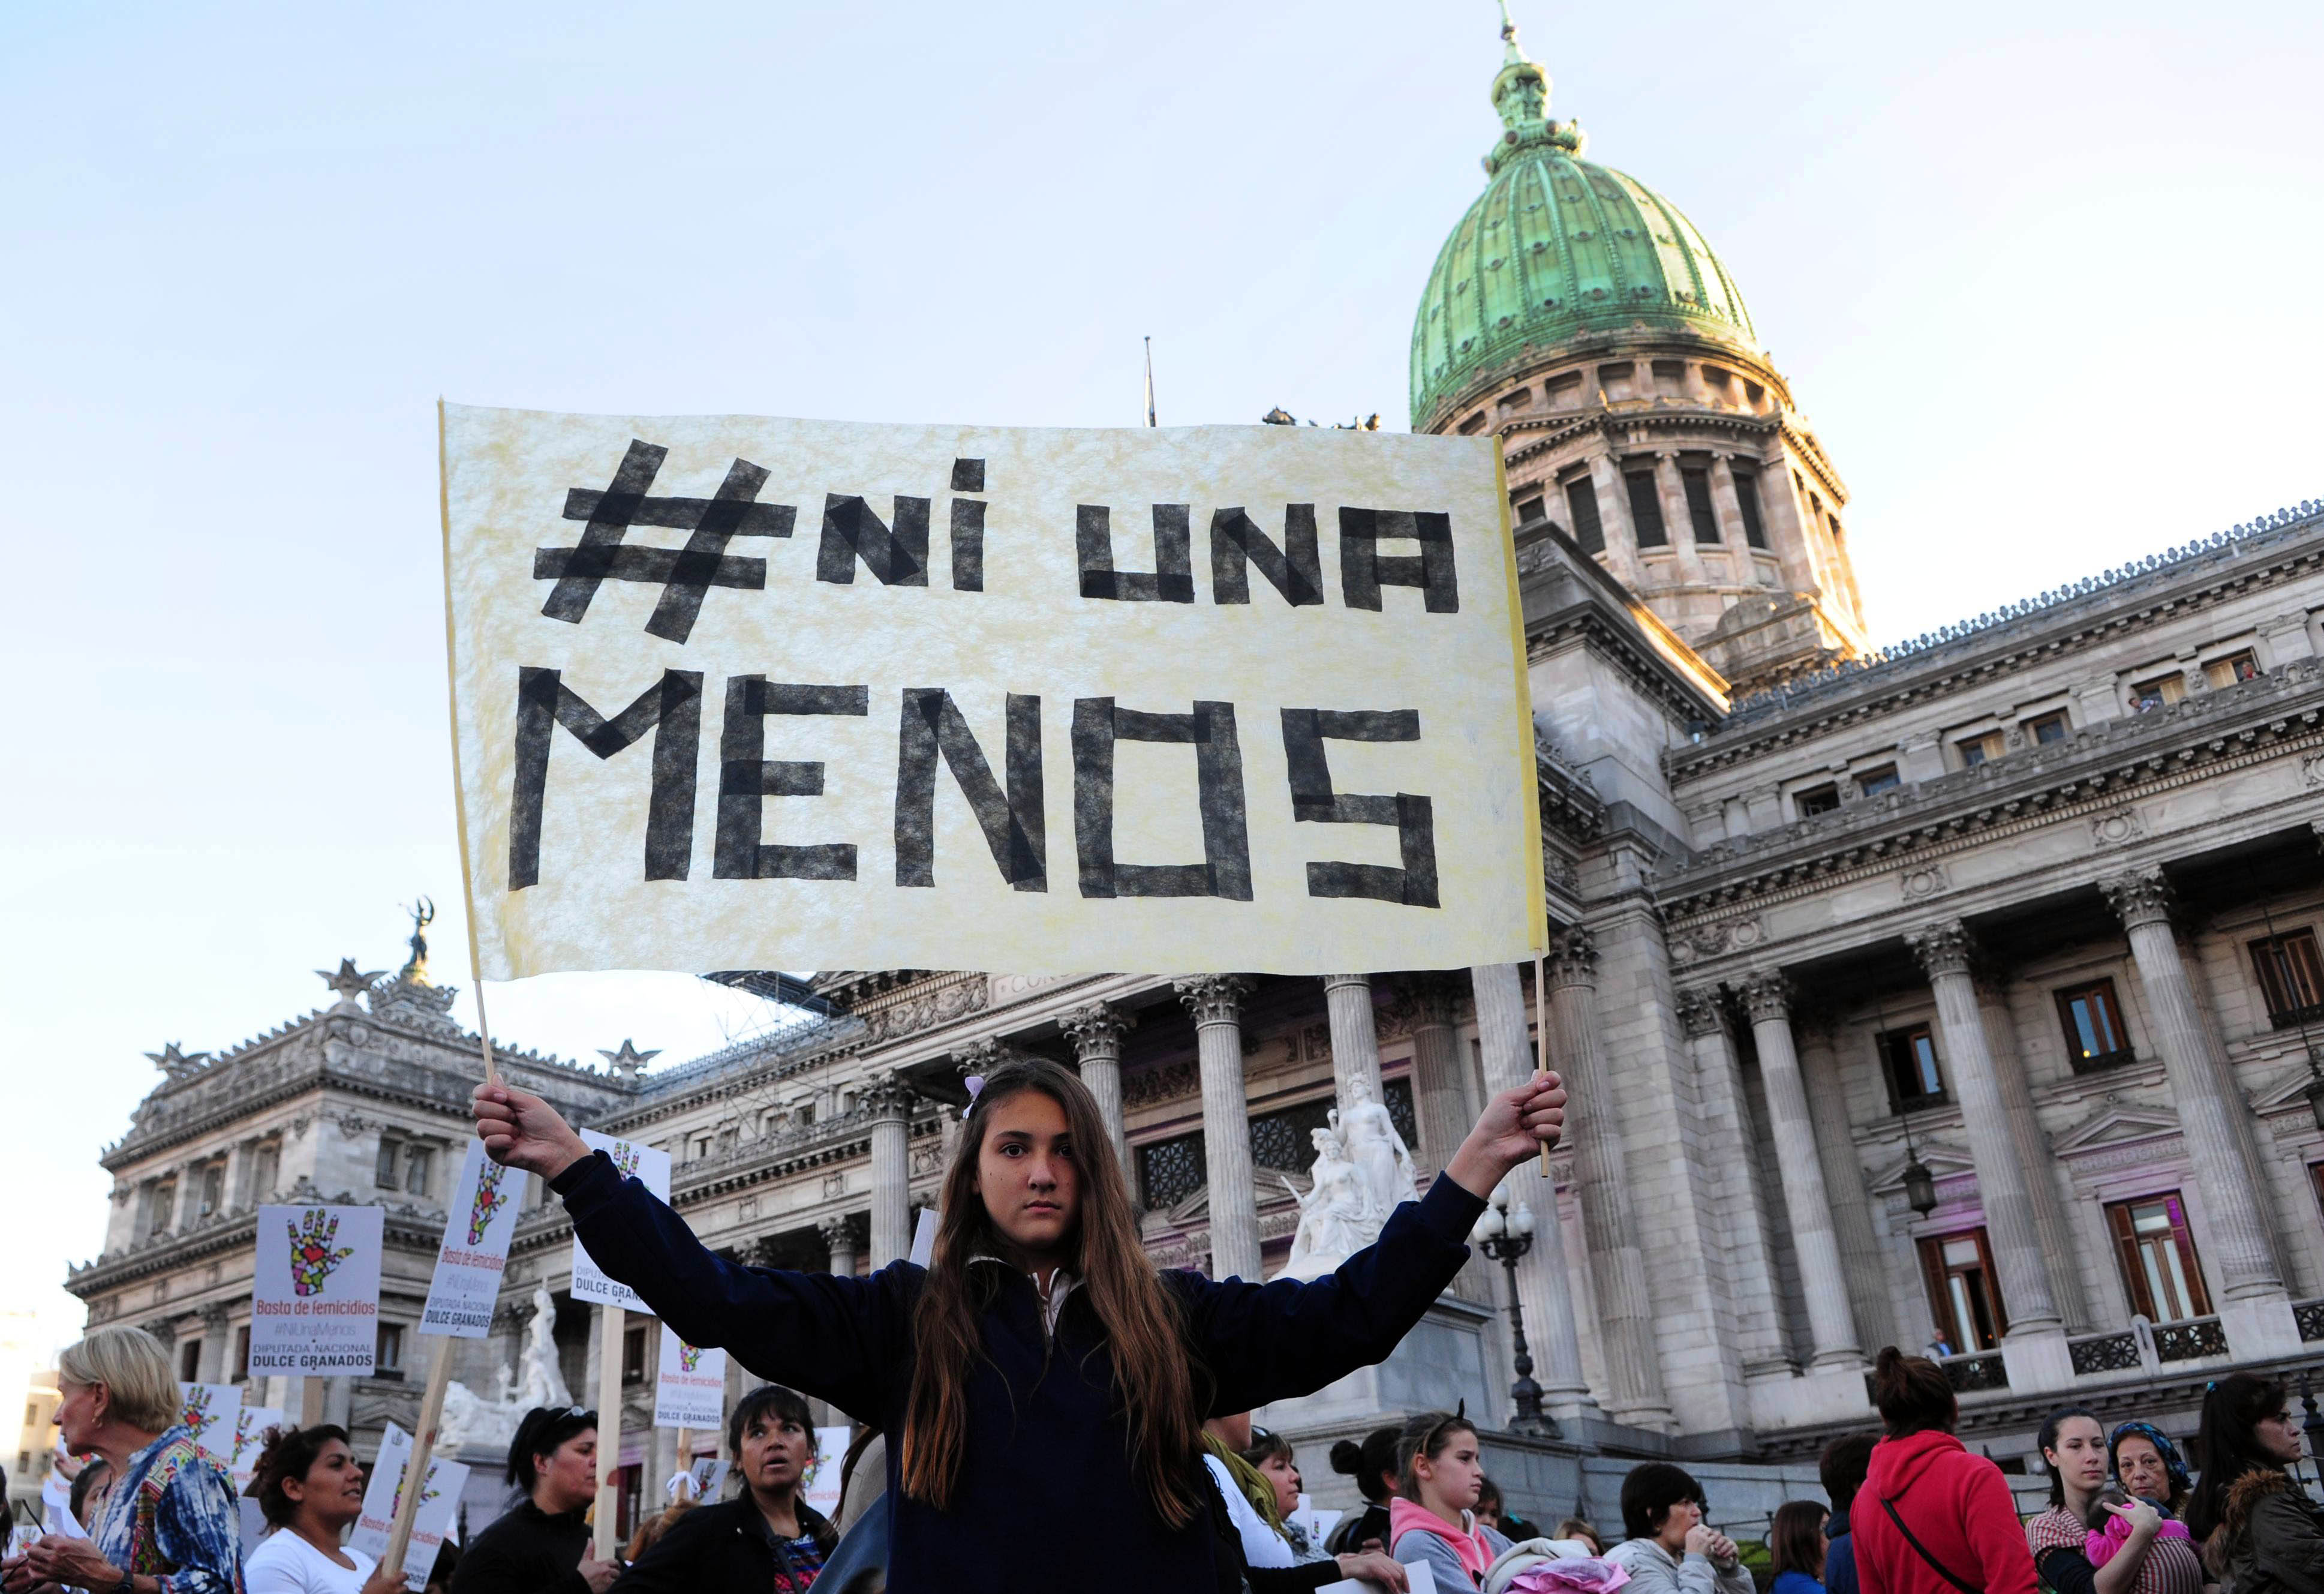 Presidente de Ecuador presenta proyecto para erradicar violencia de género: “Ni una menos, nunca más”